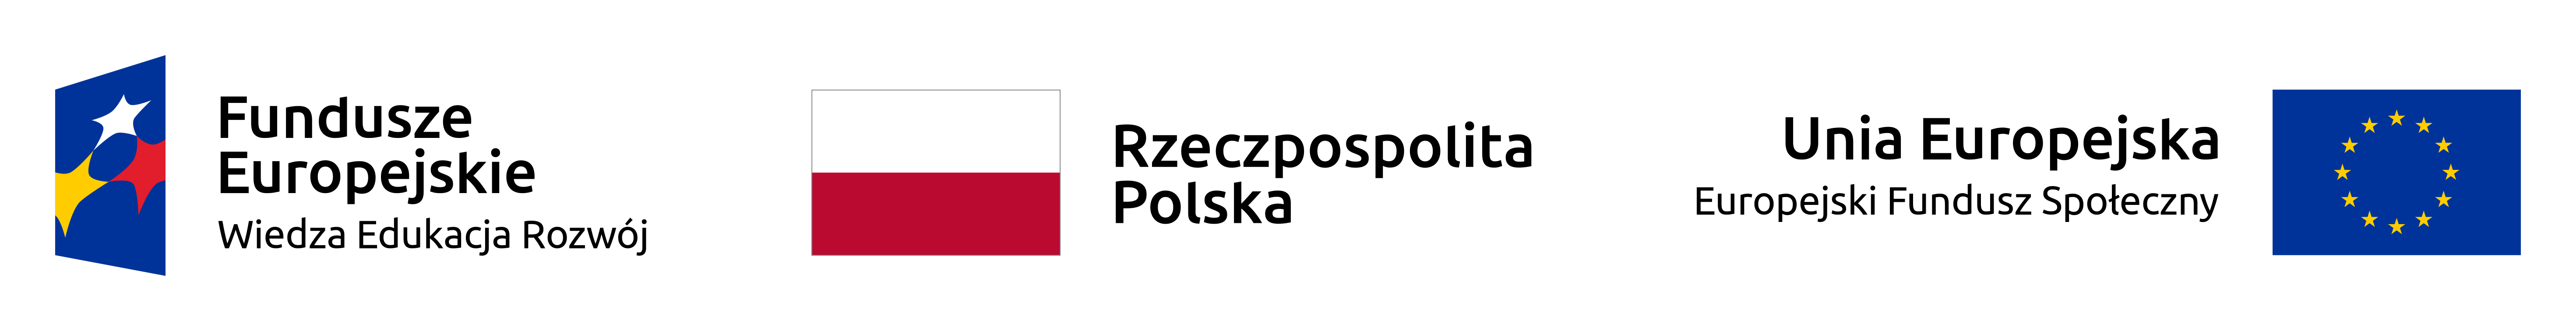 logo projektu PO WER na 2019 rok złożone z logo unii europejskiej, funduszy europejskich oraz barw Rzeczypospolitej Polskiej